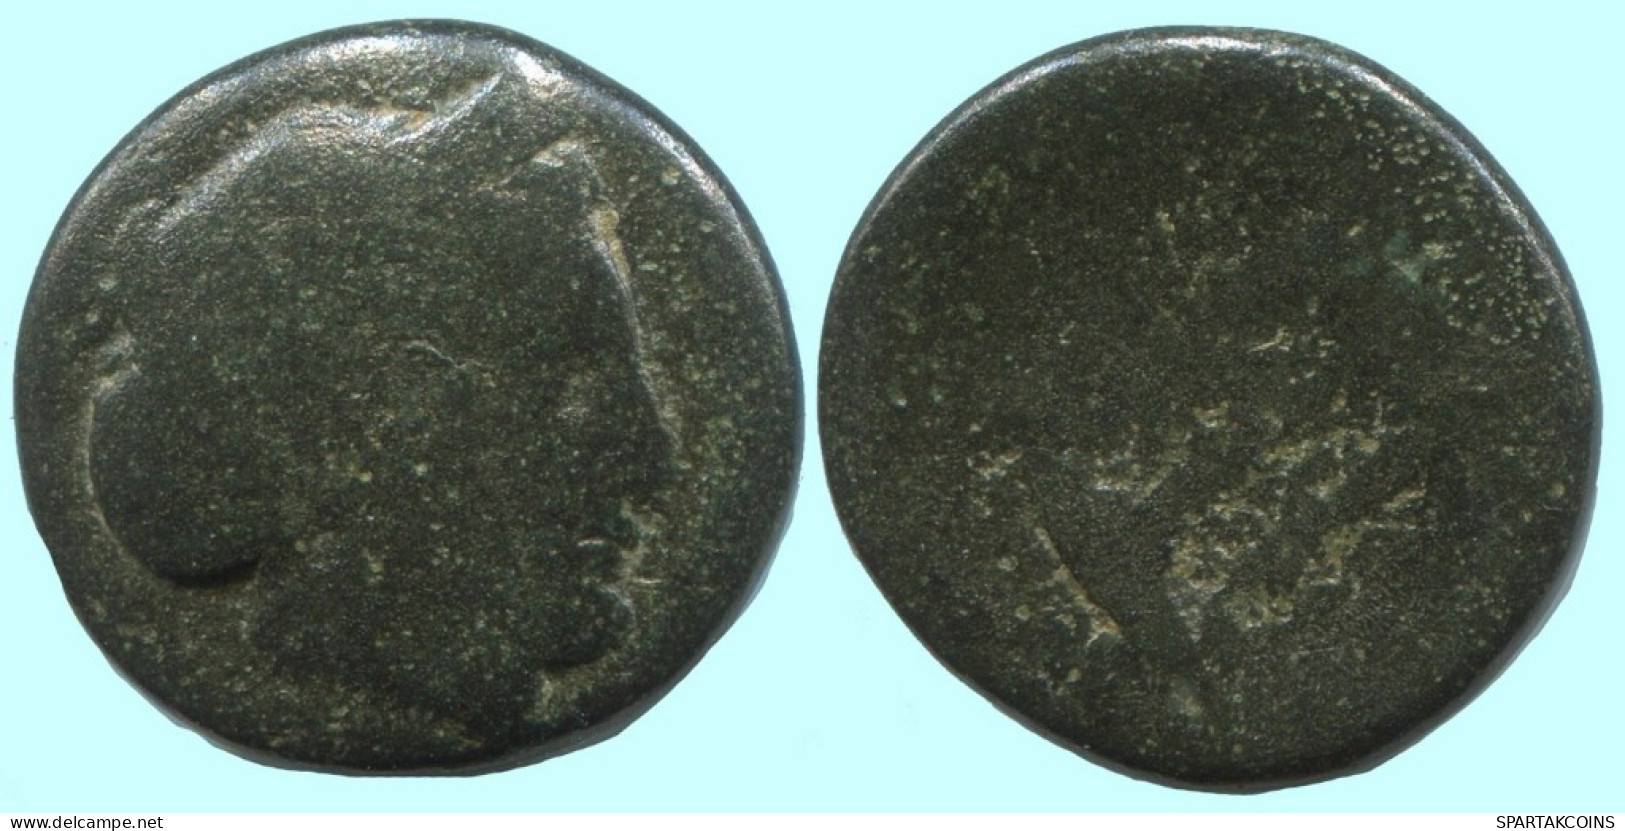 Auténtico ORIGINAL GRIEGO ANTIGUO Moneda 5g/17mm #AF947.12.E.A - Grecques